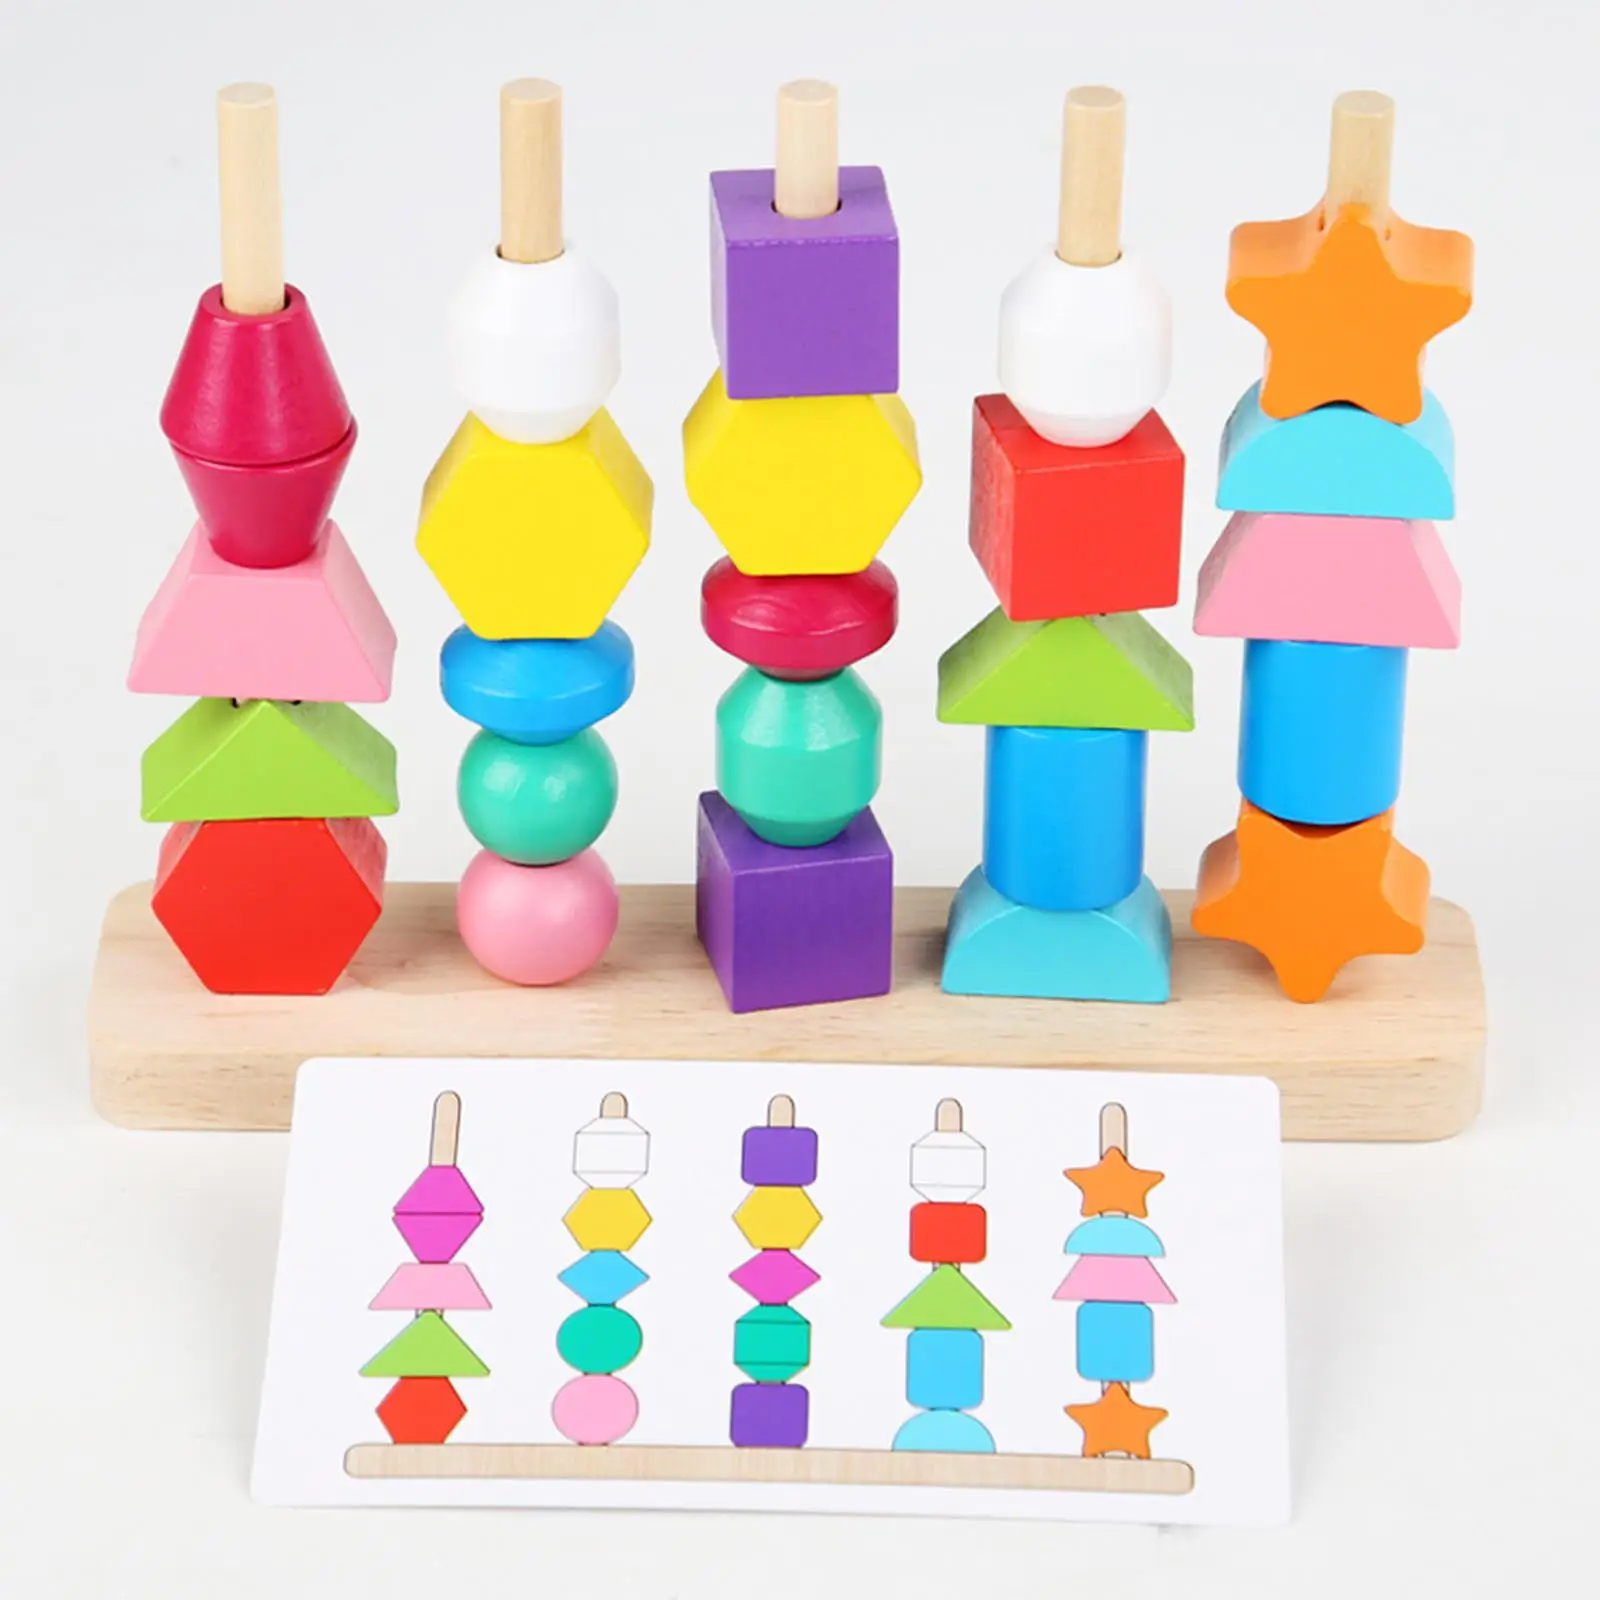 Beaded Toys Enlightenment Sensory Toys Educational for Birthday Gift Kids Children